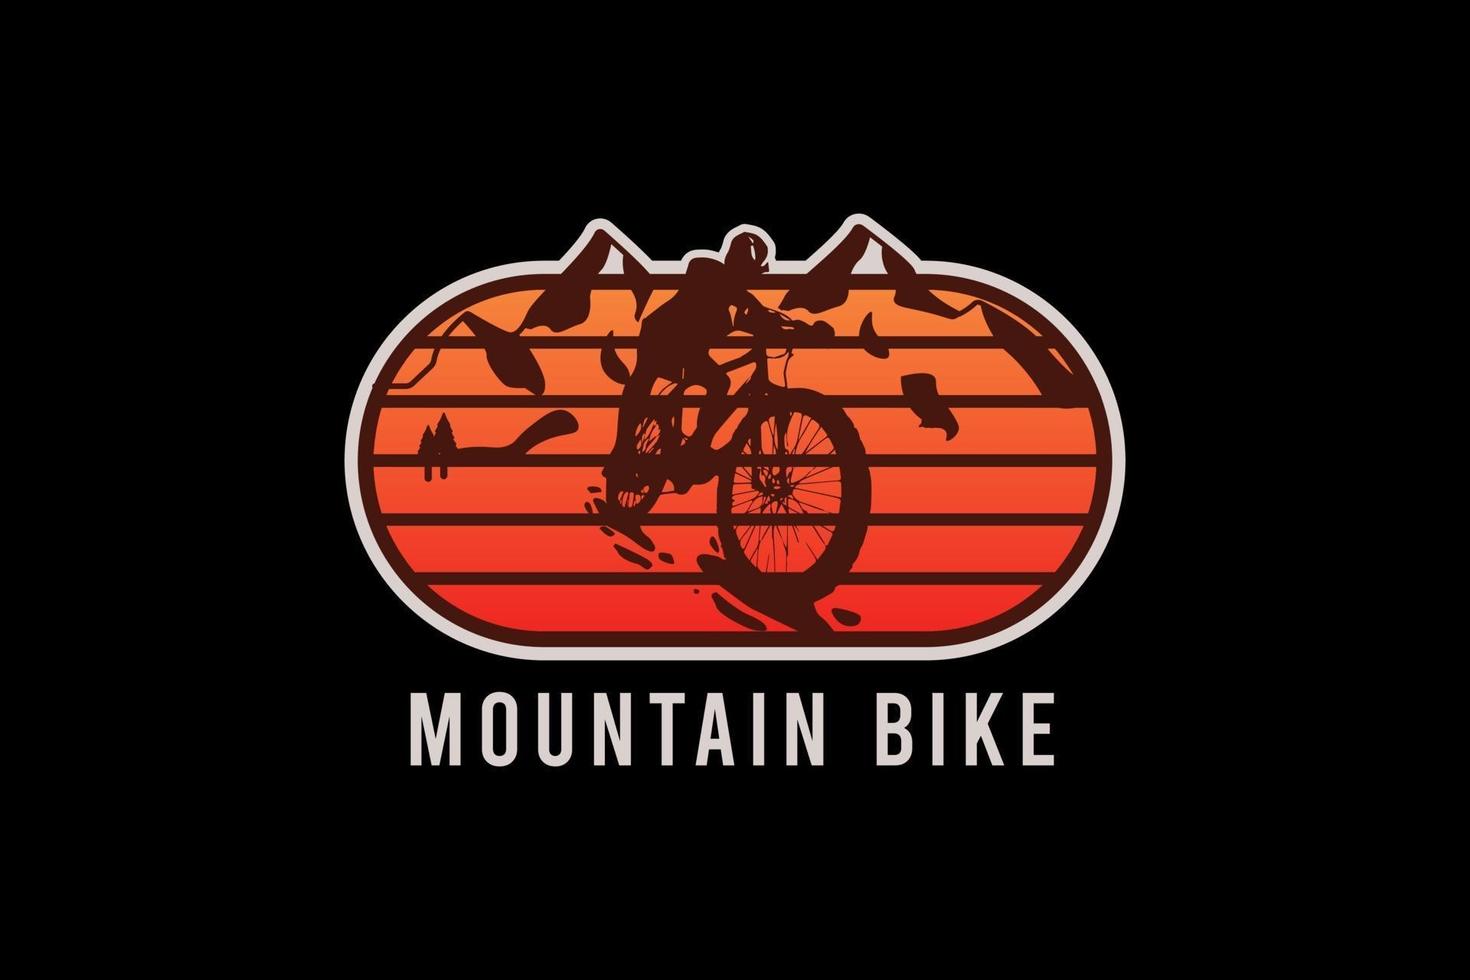 mountainbike, retro vintage stijl hand tekenen illustratie vector